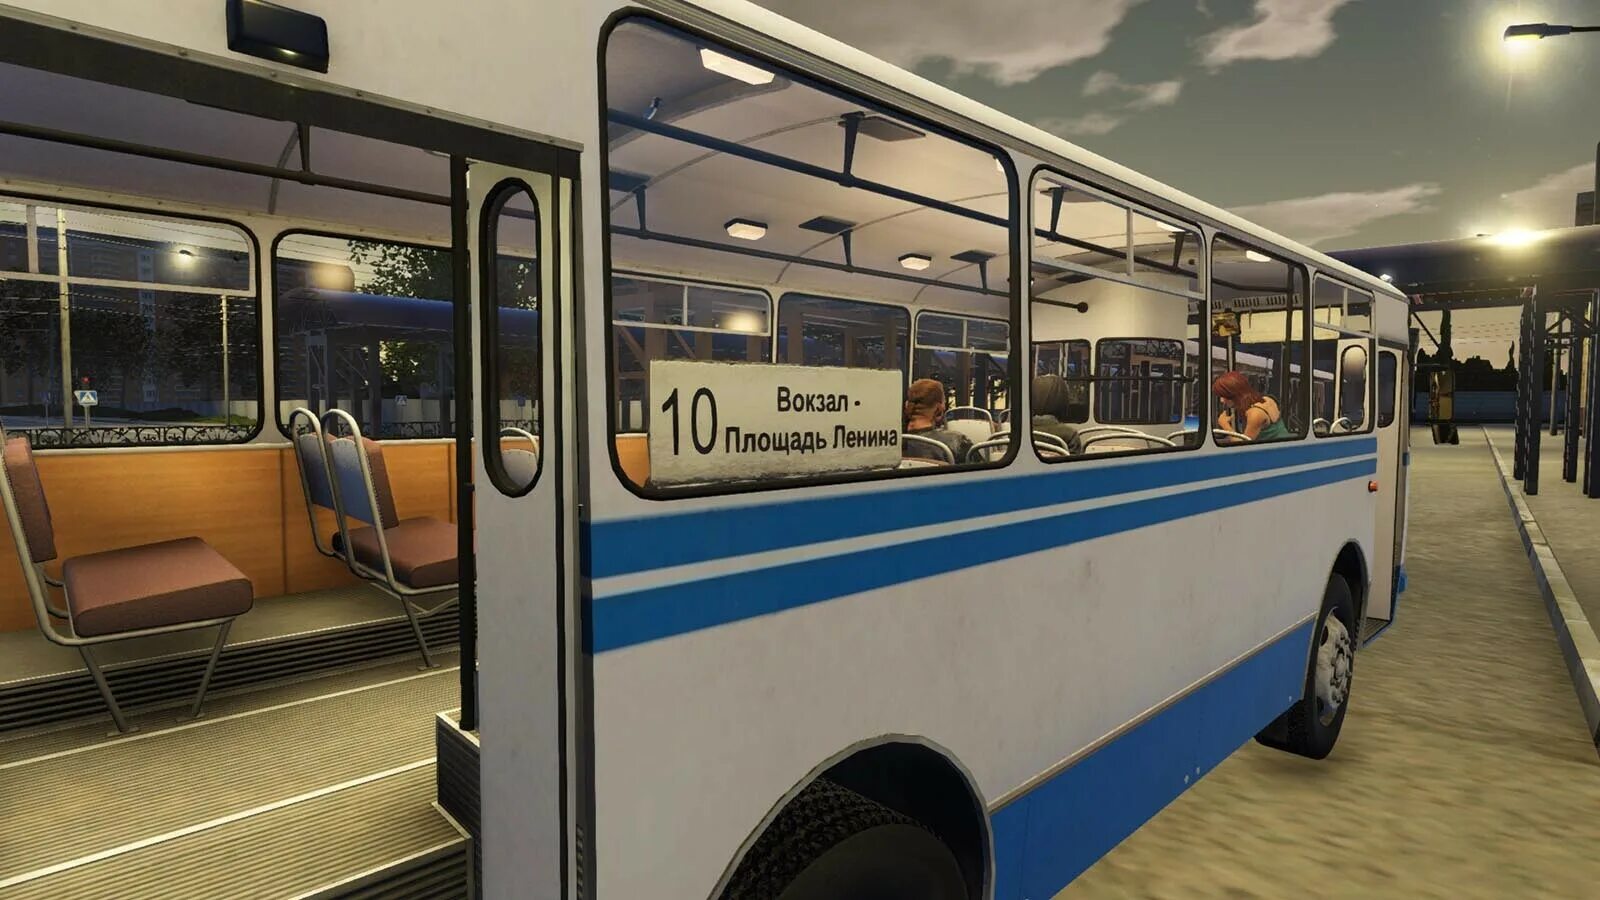 Bus Driver Simulator 2019 Серпухов. Bus Driver Simulator 19. Bus Driver Simulator 2019 автобусы. Бус драйвер симулятор 2019. Игры про симулятор автобуса